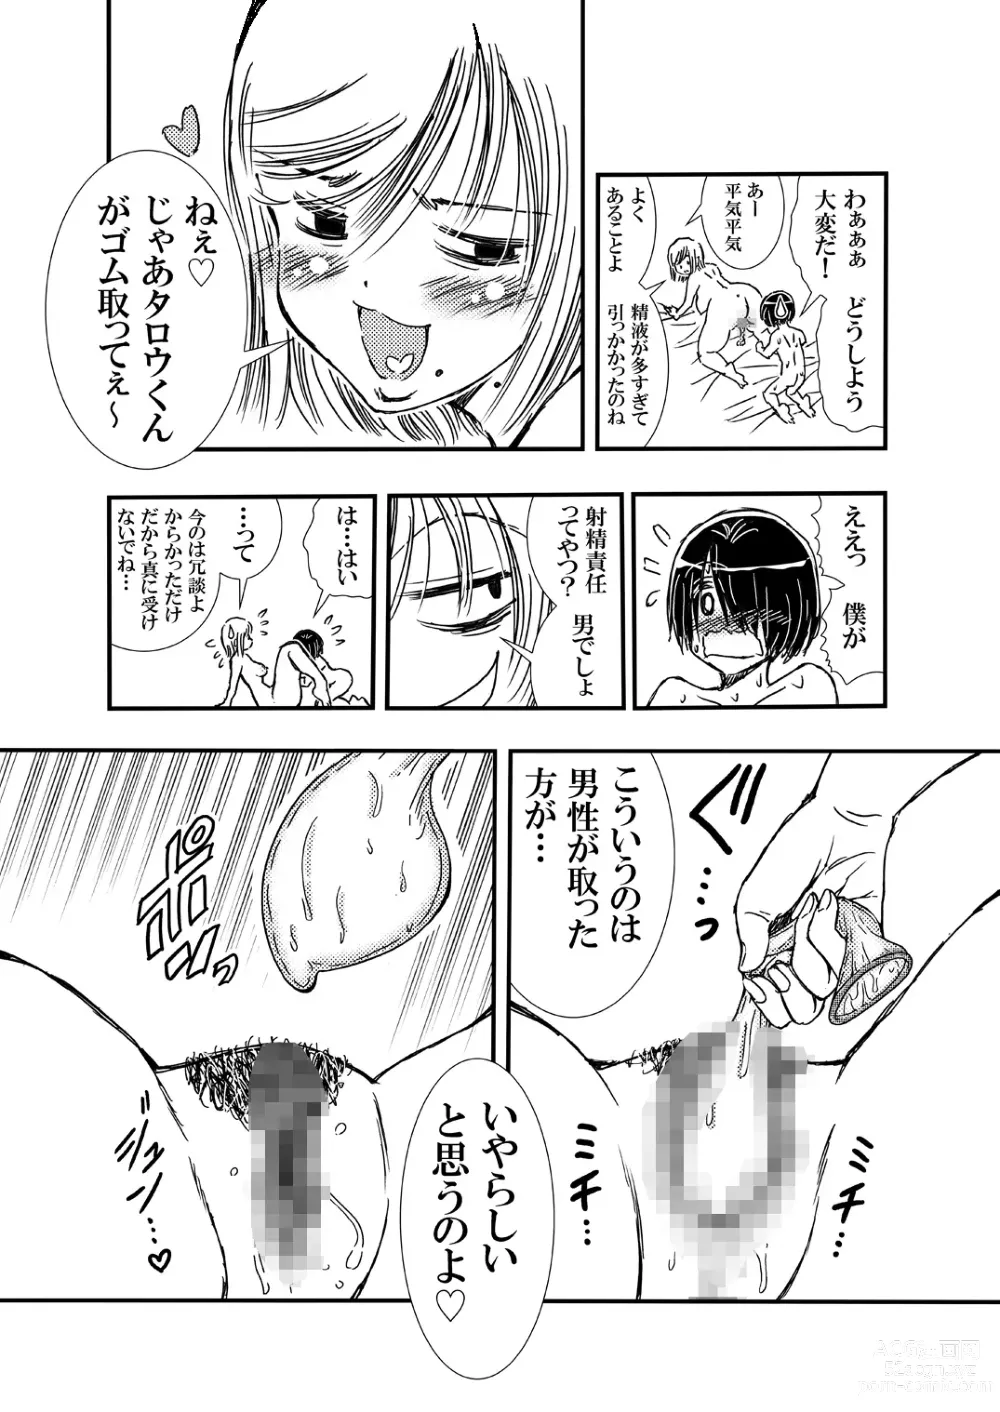 Page 16 of doujinshi Tomodachi Haha to Yatteshimatte Kimazui